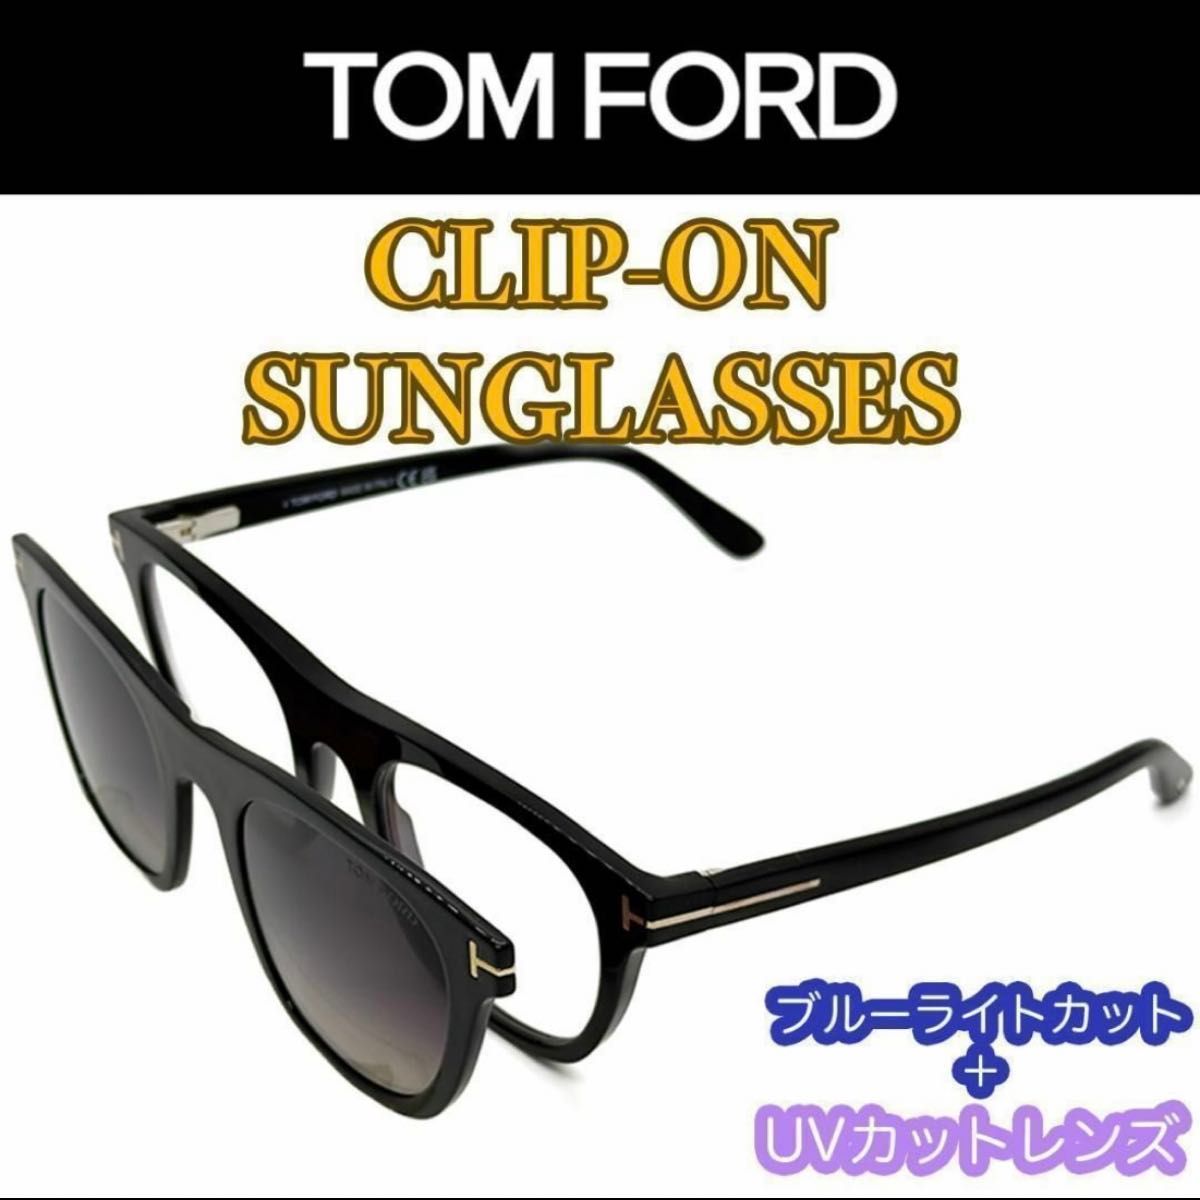 【新品/匿名配送】TOM FORD トムフォード PCメガネ + クリップオン サングラス TF5895B ブラック イタリア製